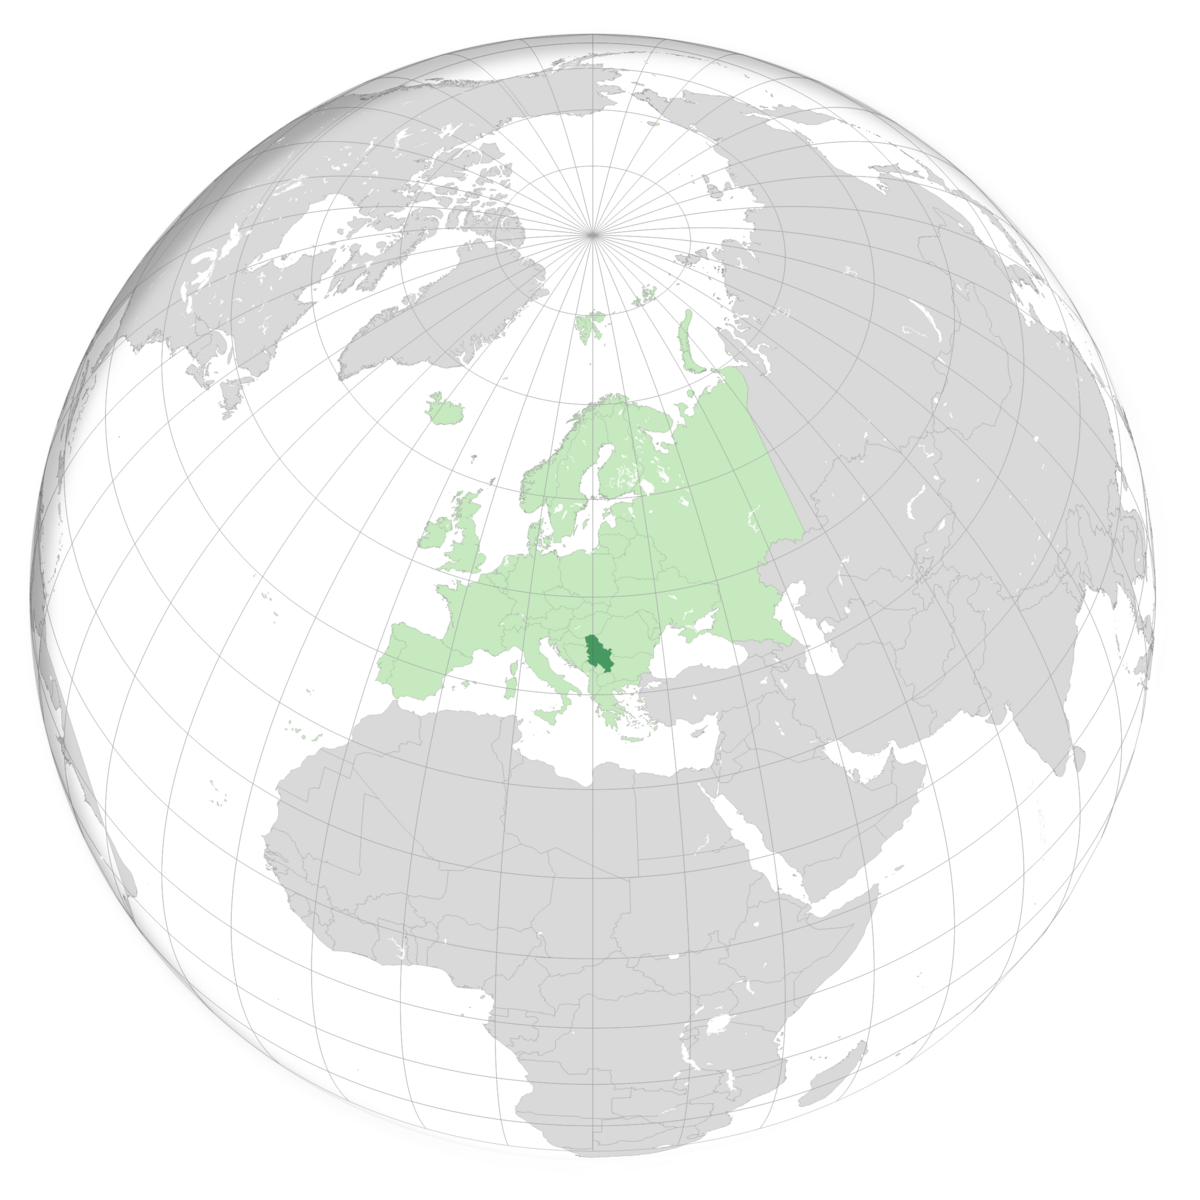 plassering av Serbia på jordkloden. Kart